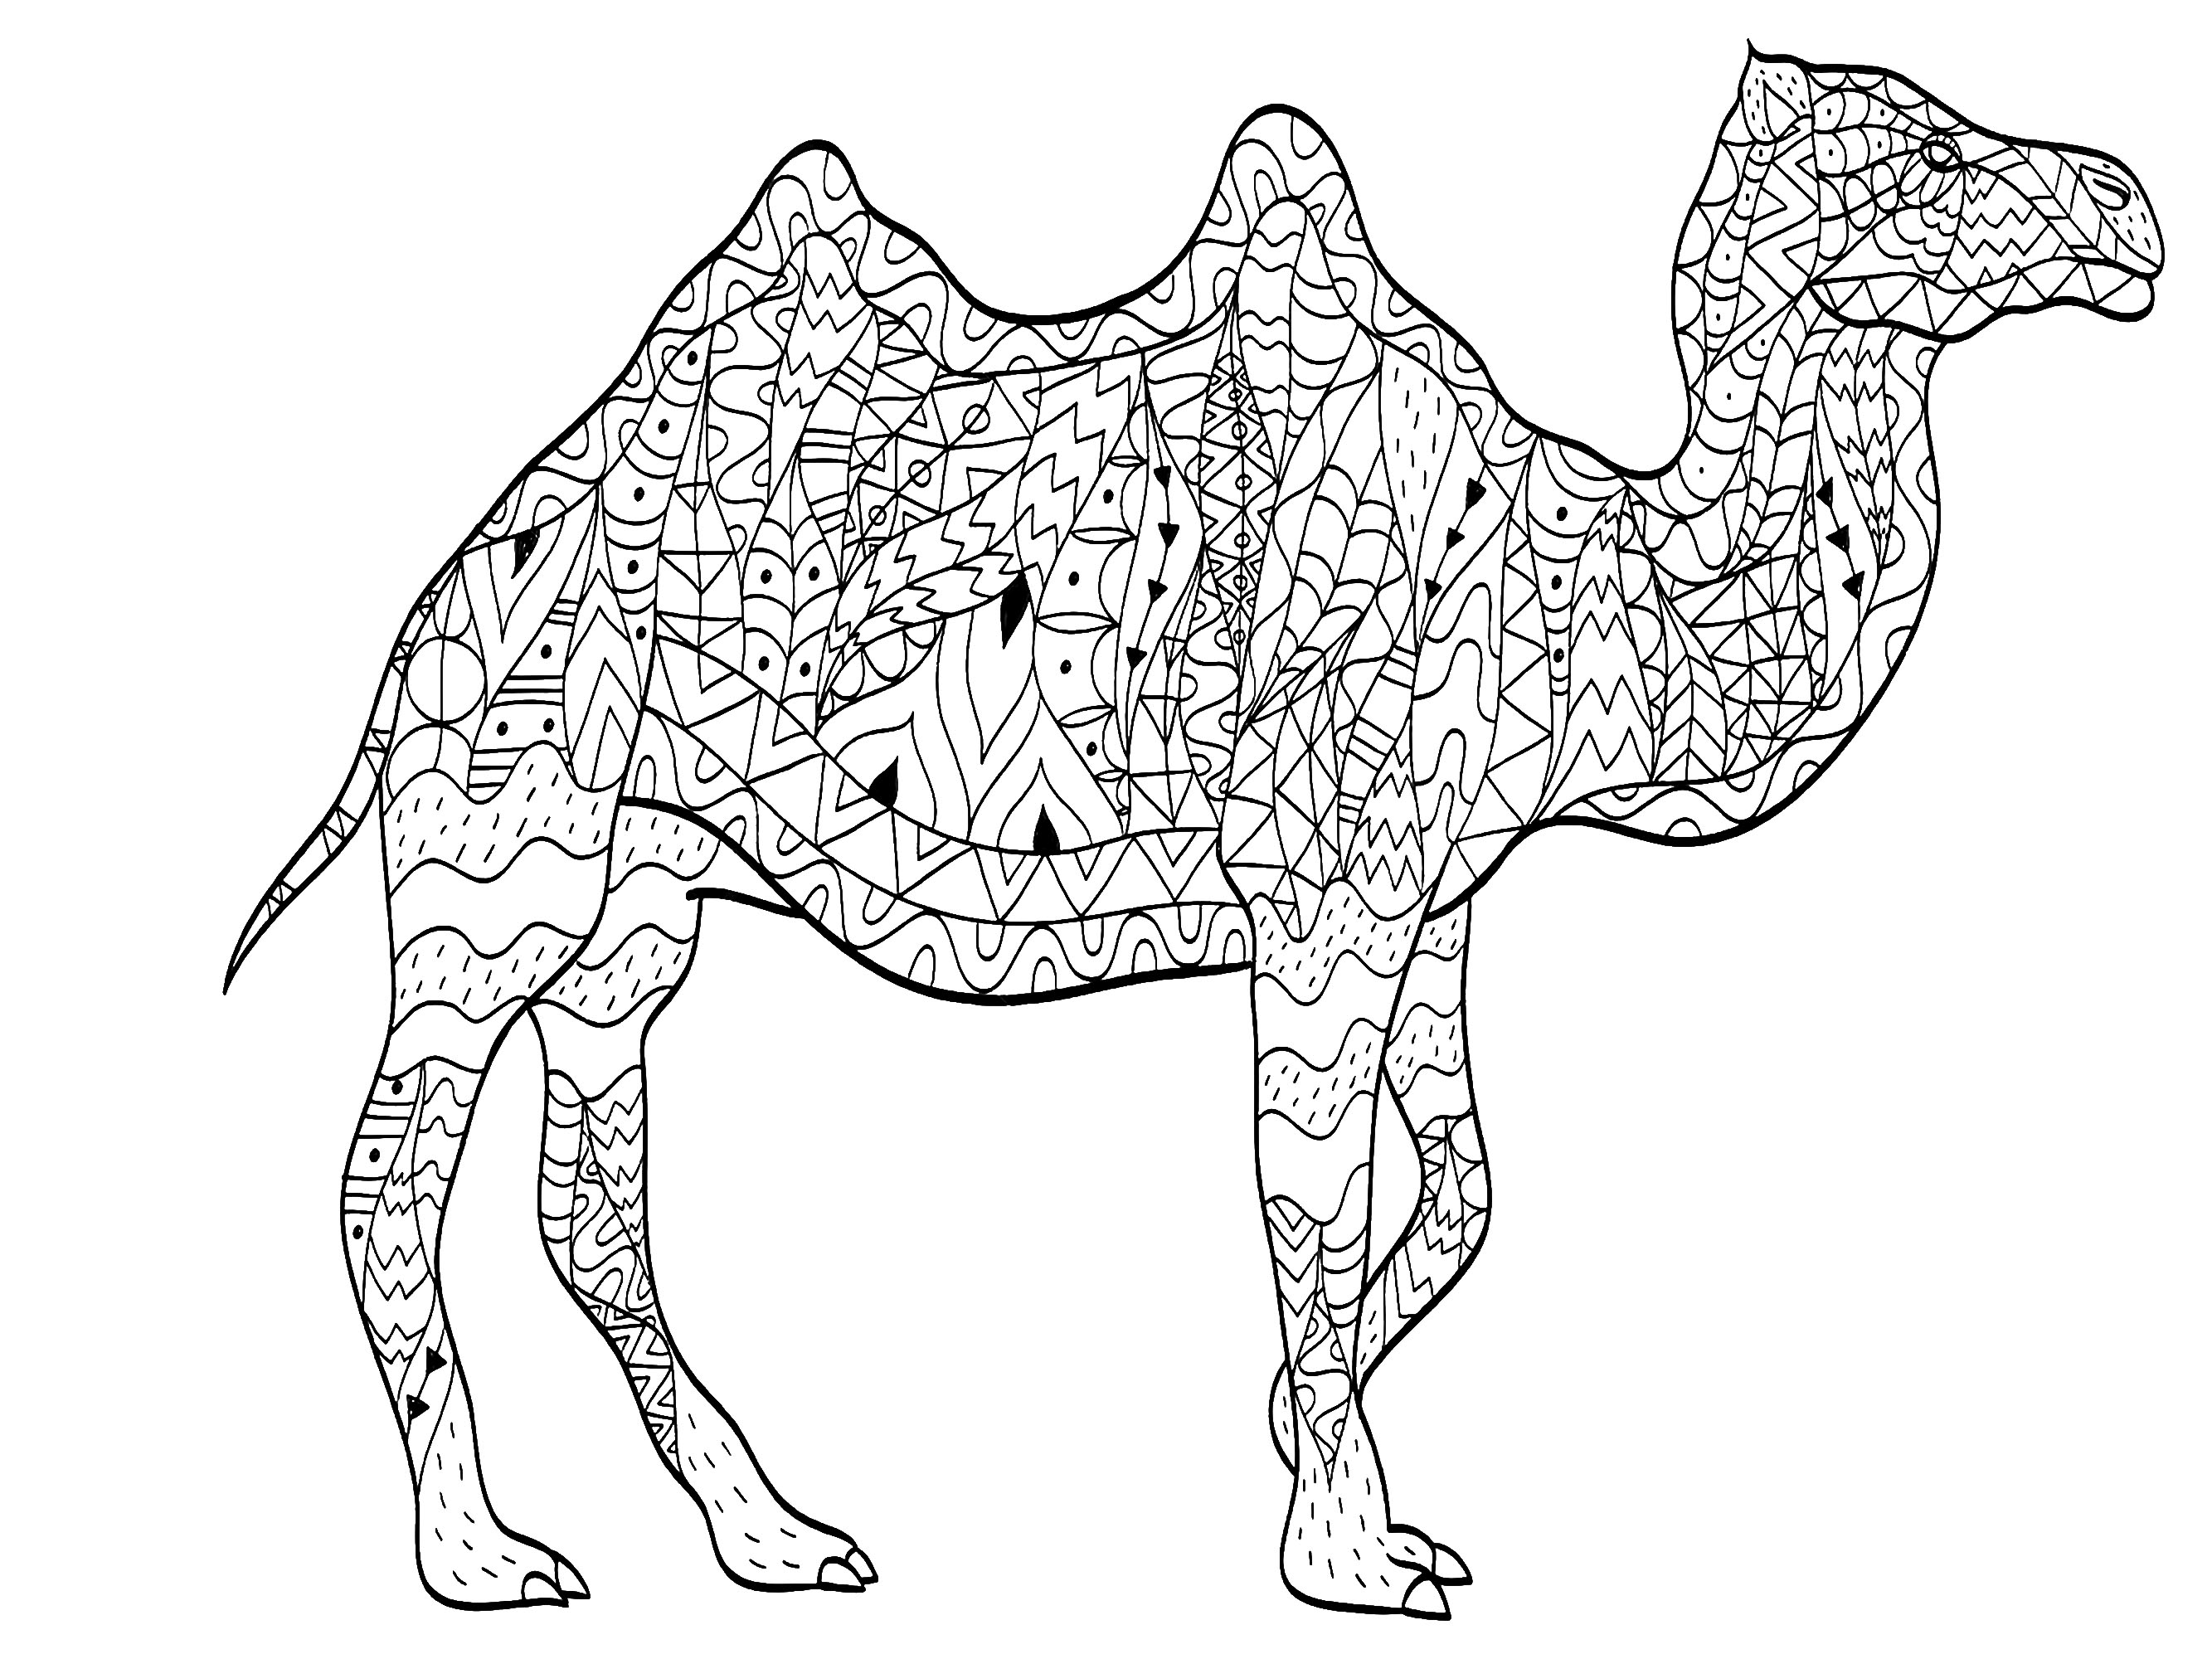 Ein majestätisches Kamel, gezeichnet mit vielfältigen und originellen Mustern, Künstler : Viktoriia Panchenko   Quelle : 123rf